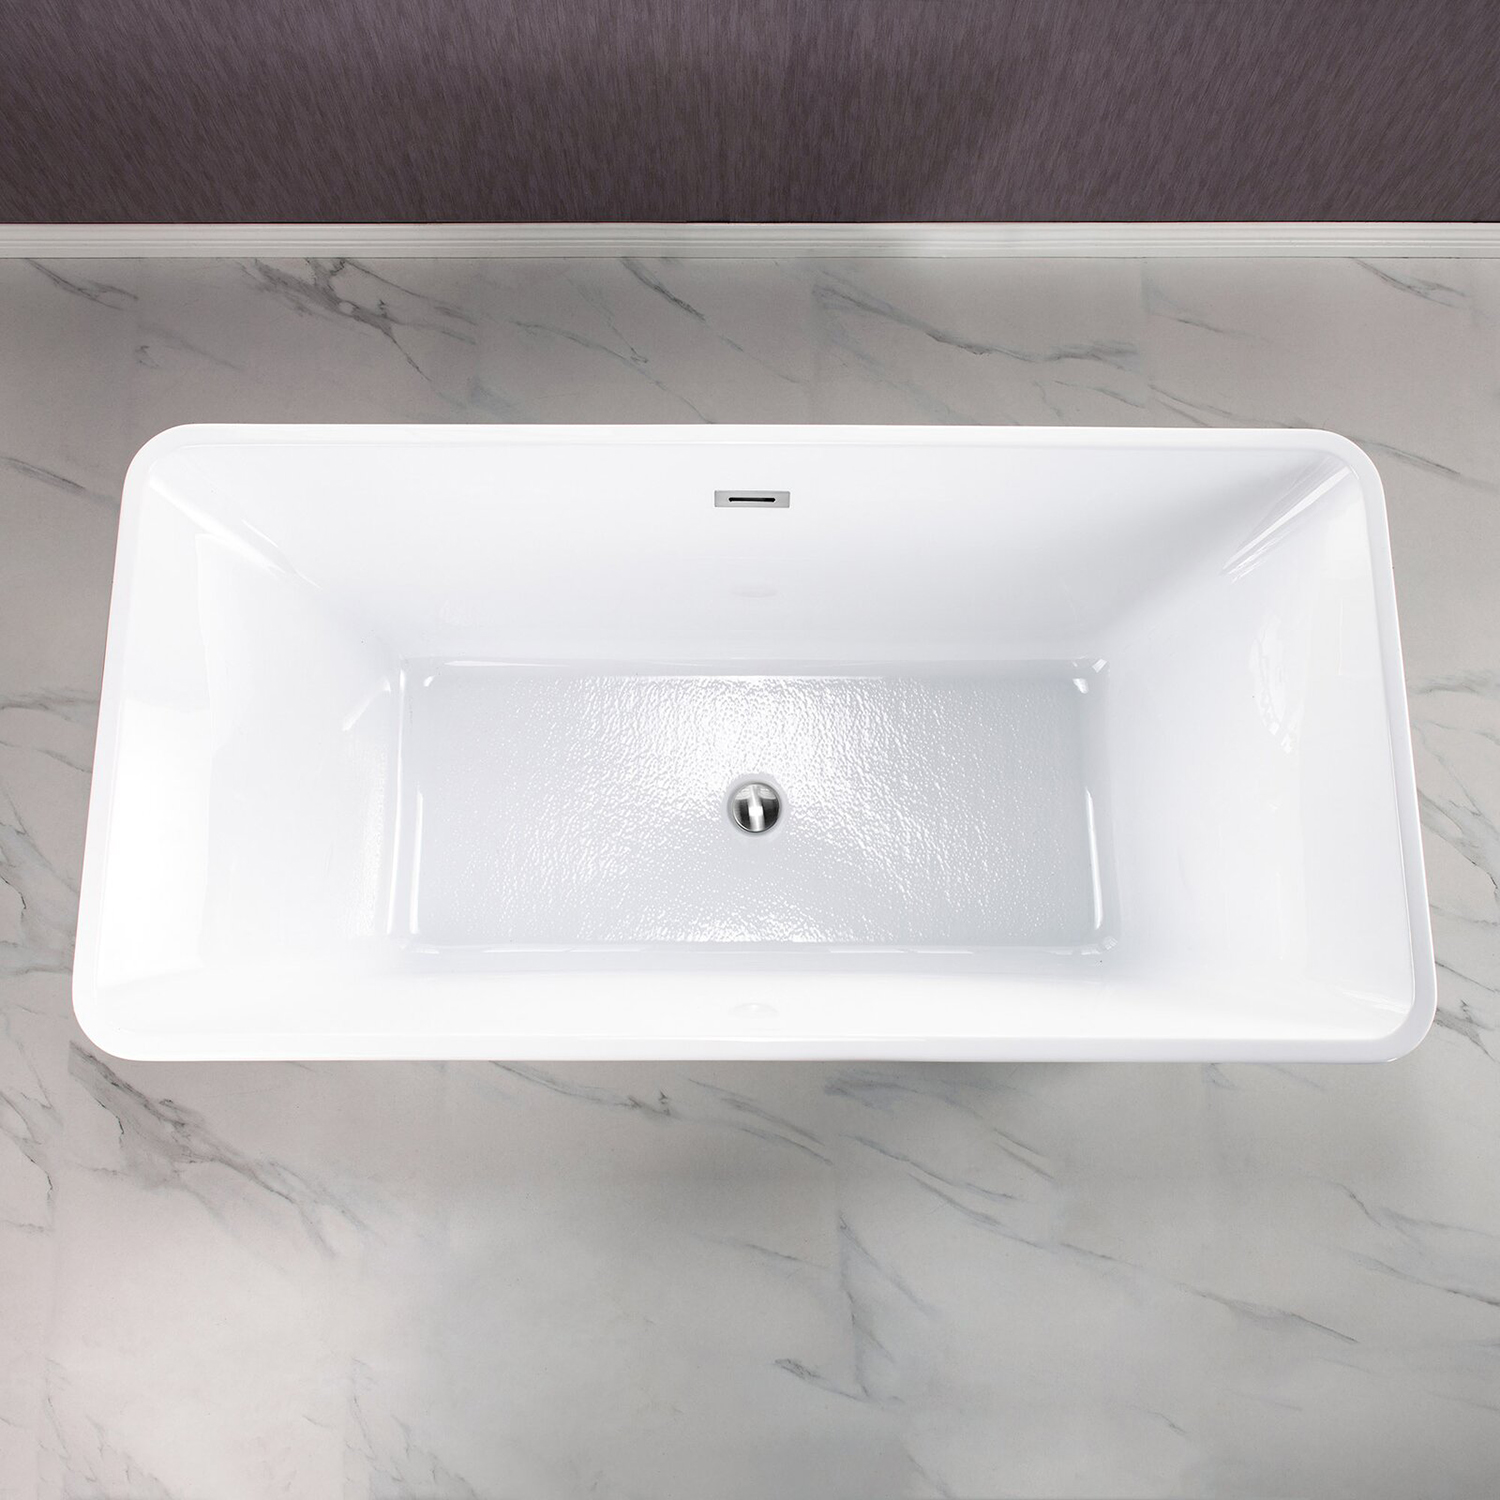 Bañera rectangular independiente de acrílico moderna, bañera de hidromasaje independiente de fibra de vidrio con fondo plano de 67 pulgadas